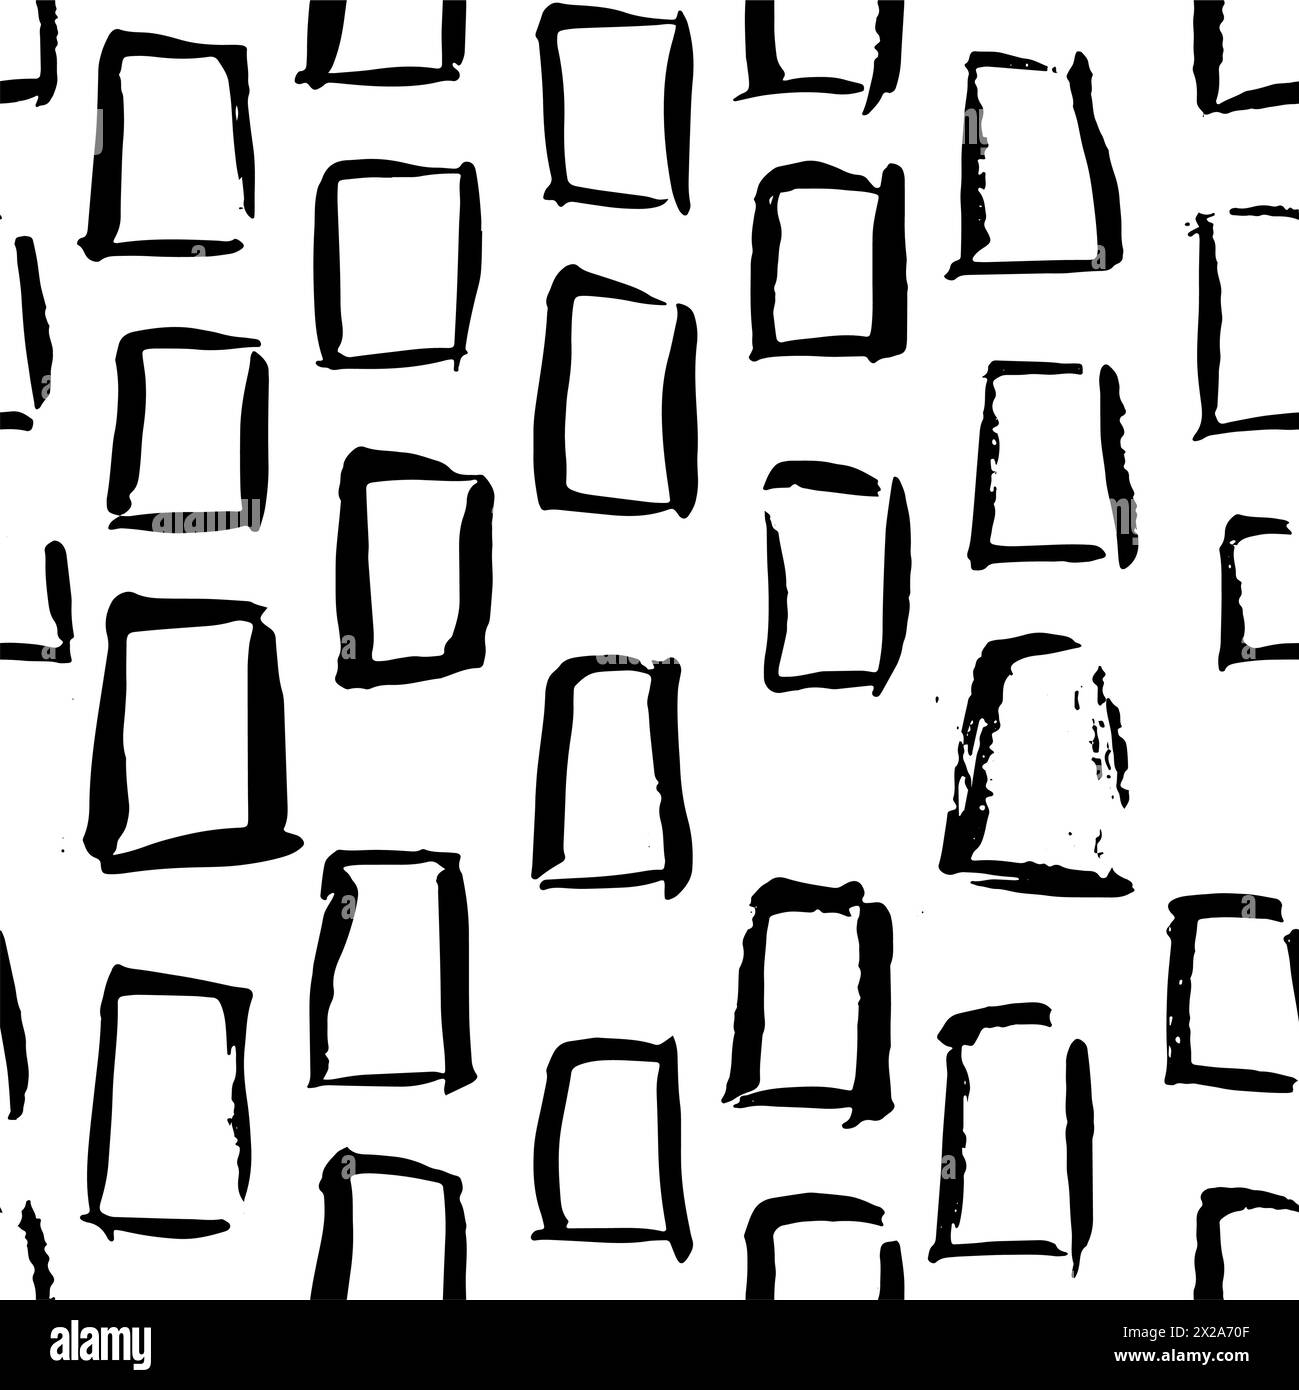 Nahtloses Muster mit handgezeichneter abstrakter Tuschentextur mit quadratischen Ziegeln. Schwarzer und weißer endloser Vektorhintergrund. Stock Vektor